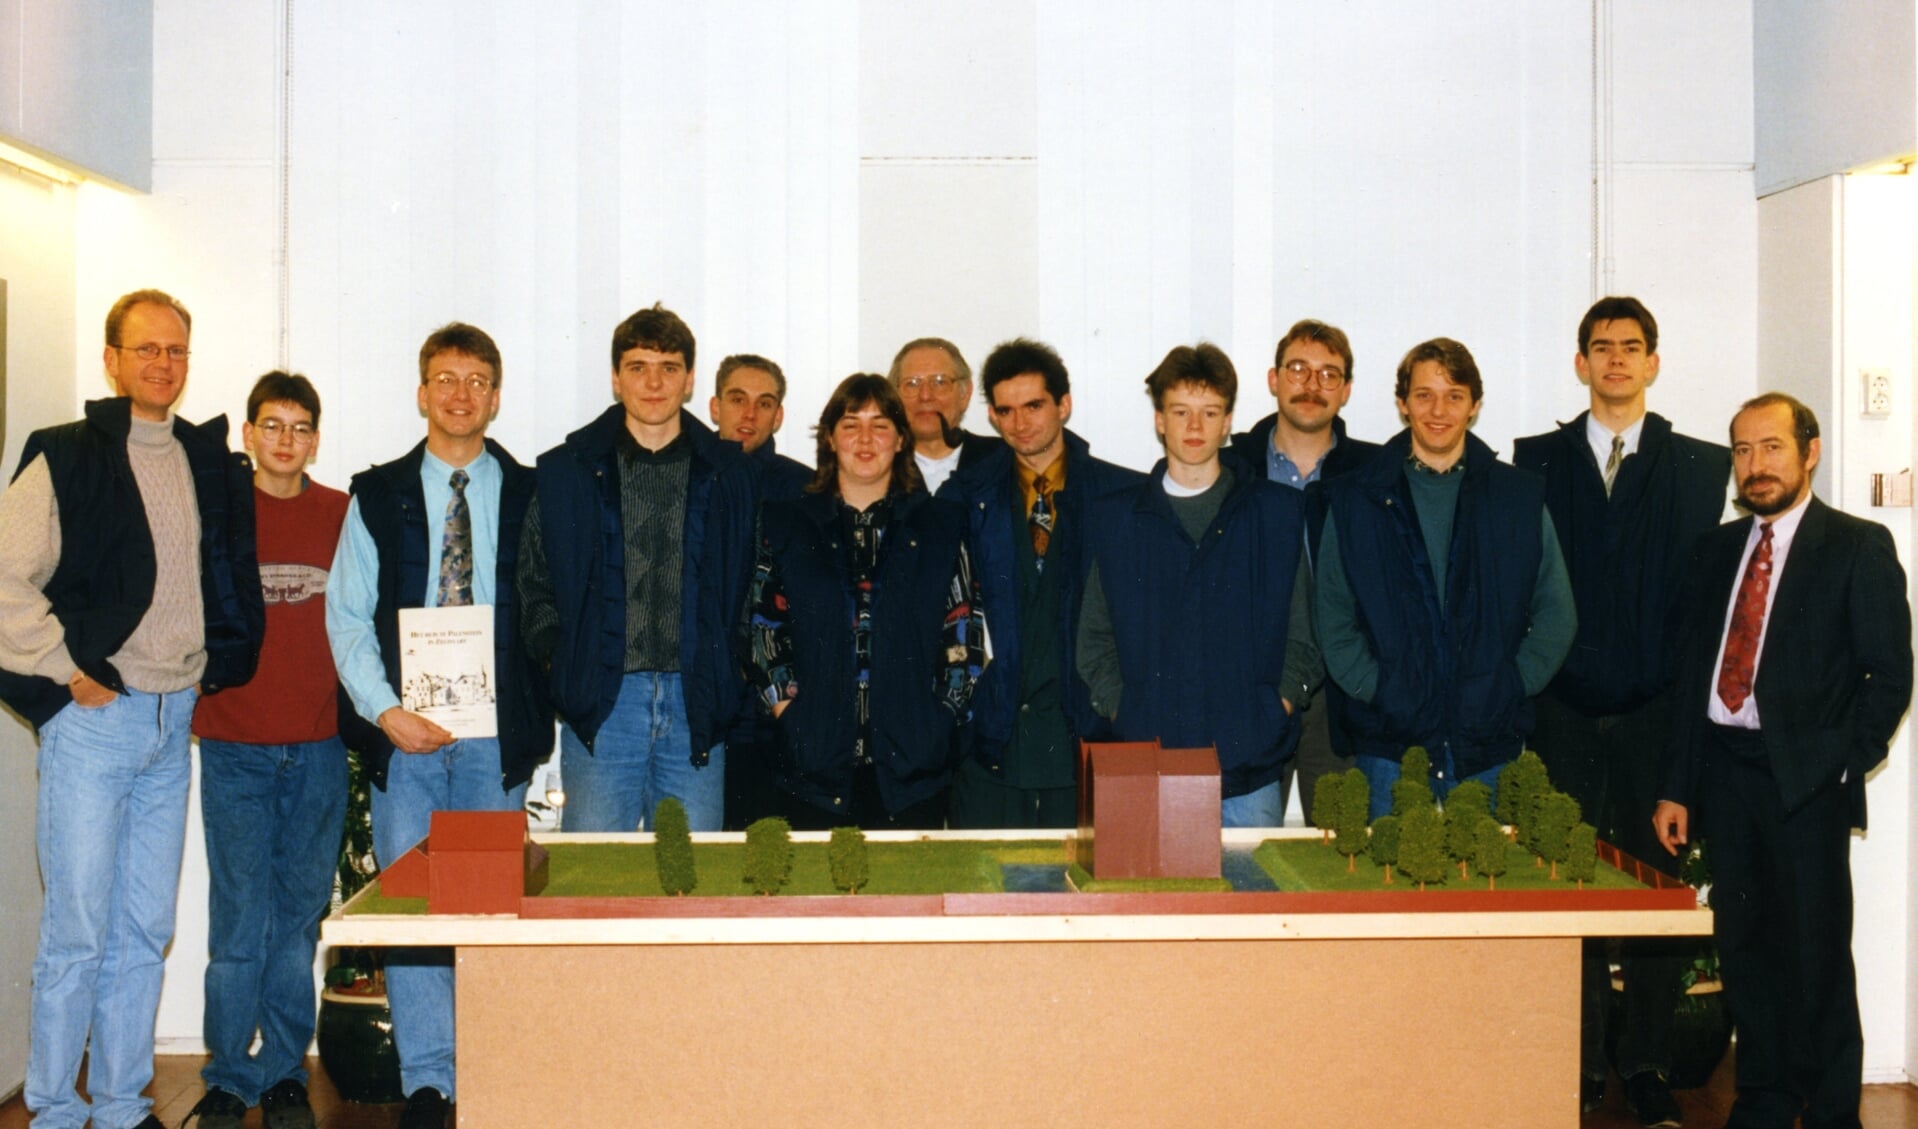 De Archeologische Werkgroep Zoetermeer bij de expo over het Huis te Palenstein in Museum ’t Oude Huis, 1993 met links Ronald Grootveld.